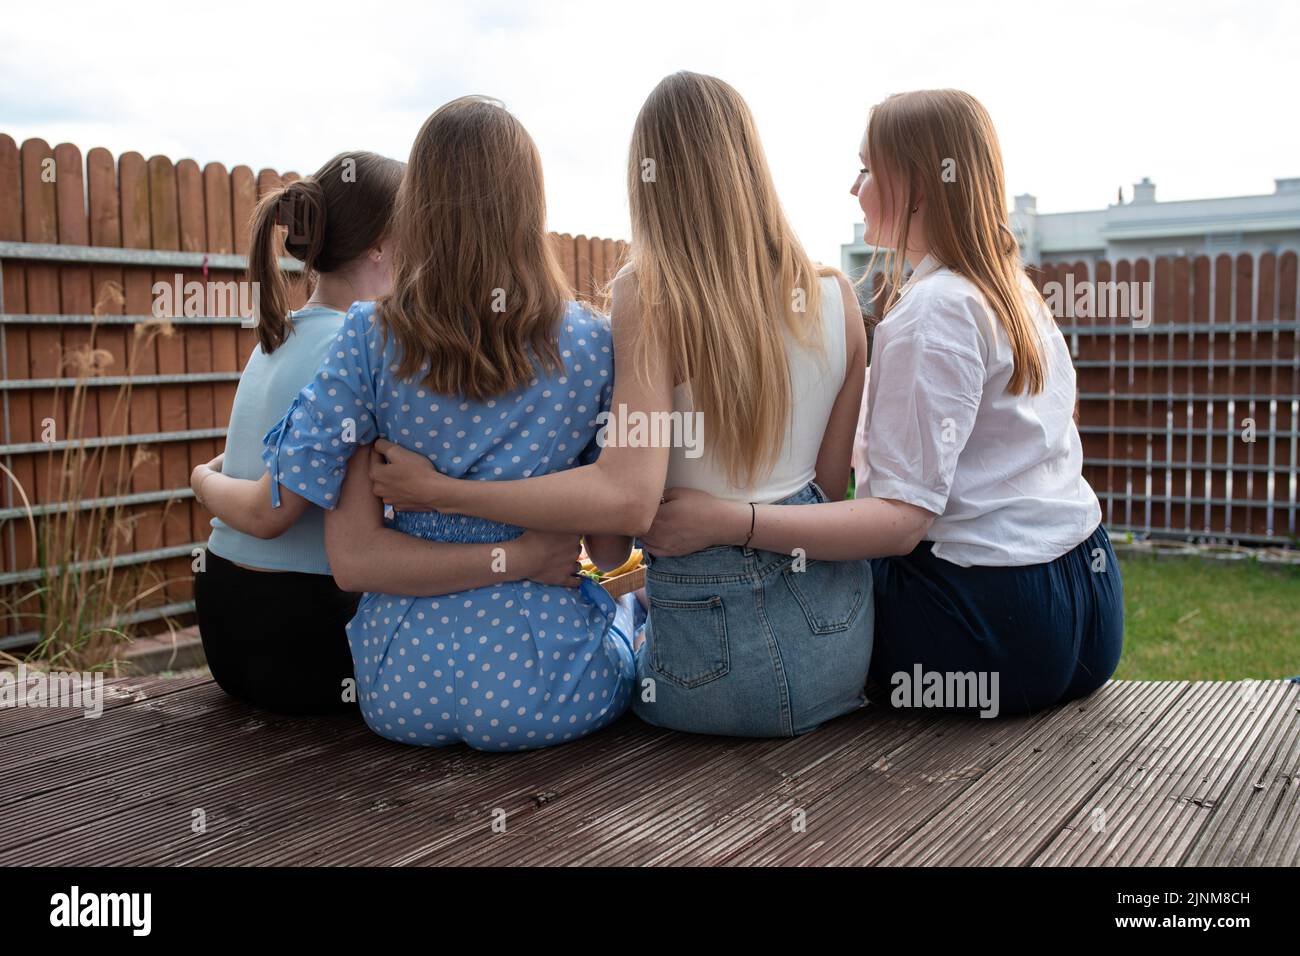 Rückansicht einer Gruppe junger Frauen mit langen Haaren, die auf einer hölzernen Veranda sitzen und sich im Hinterhof umarmen. Sommer. Stockfoto